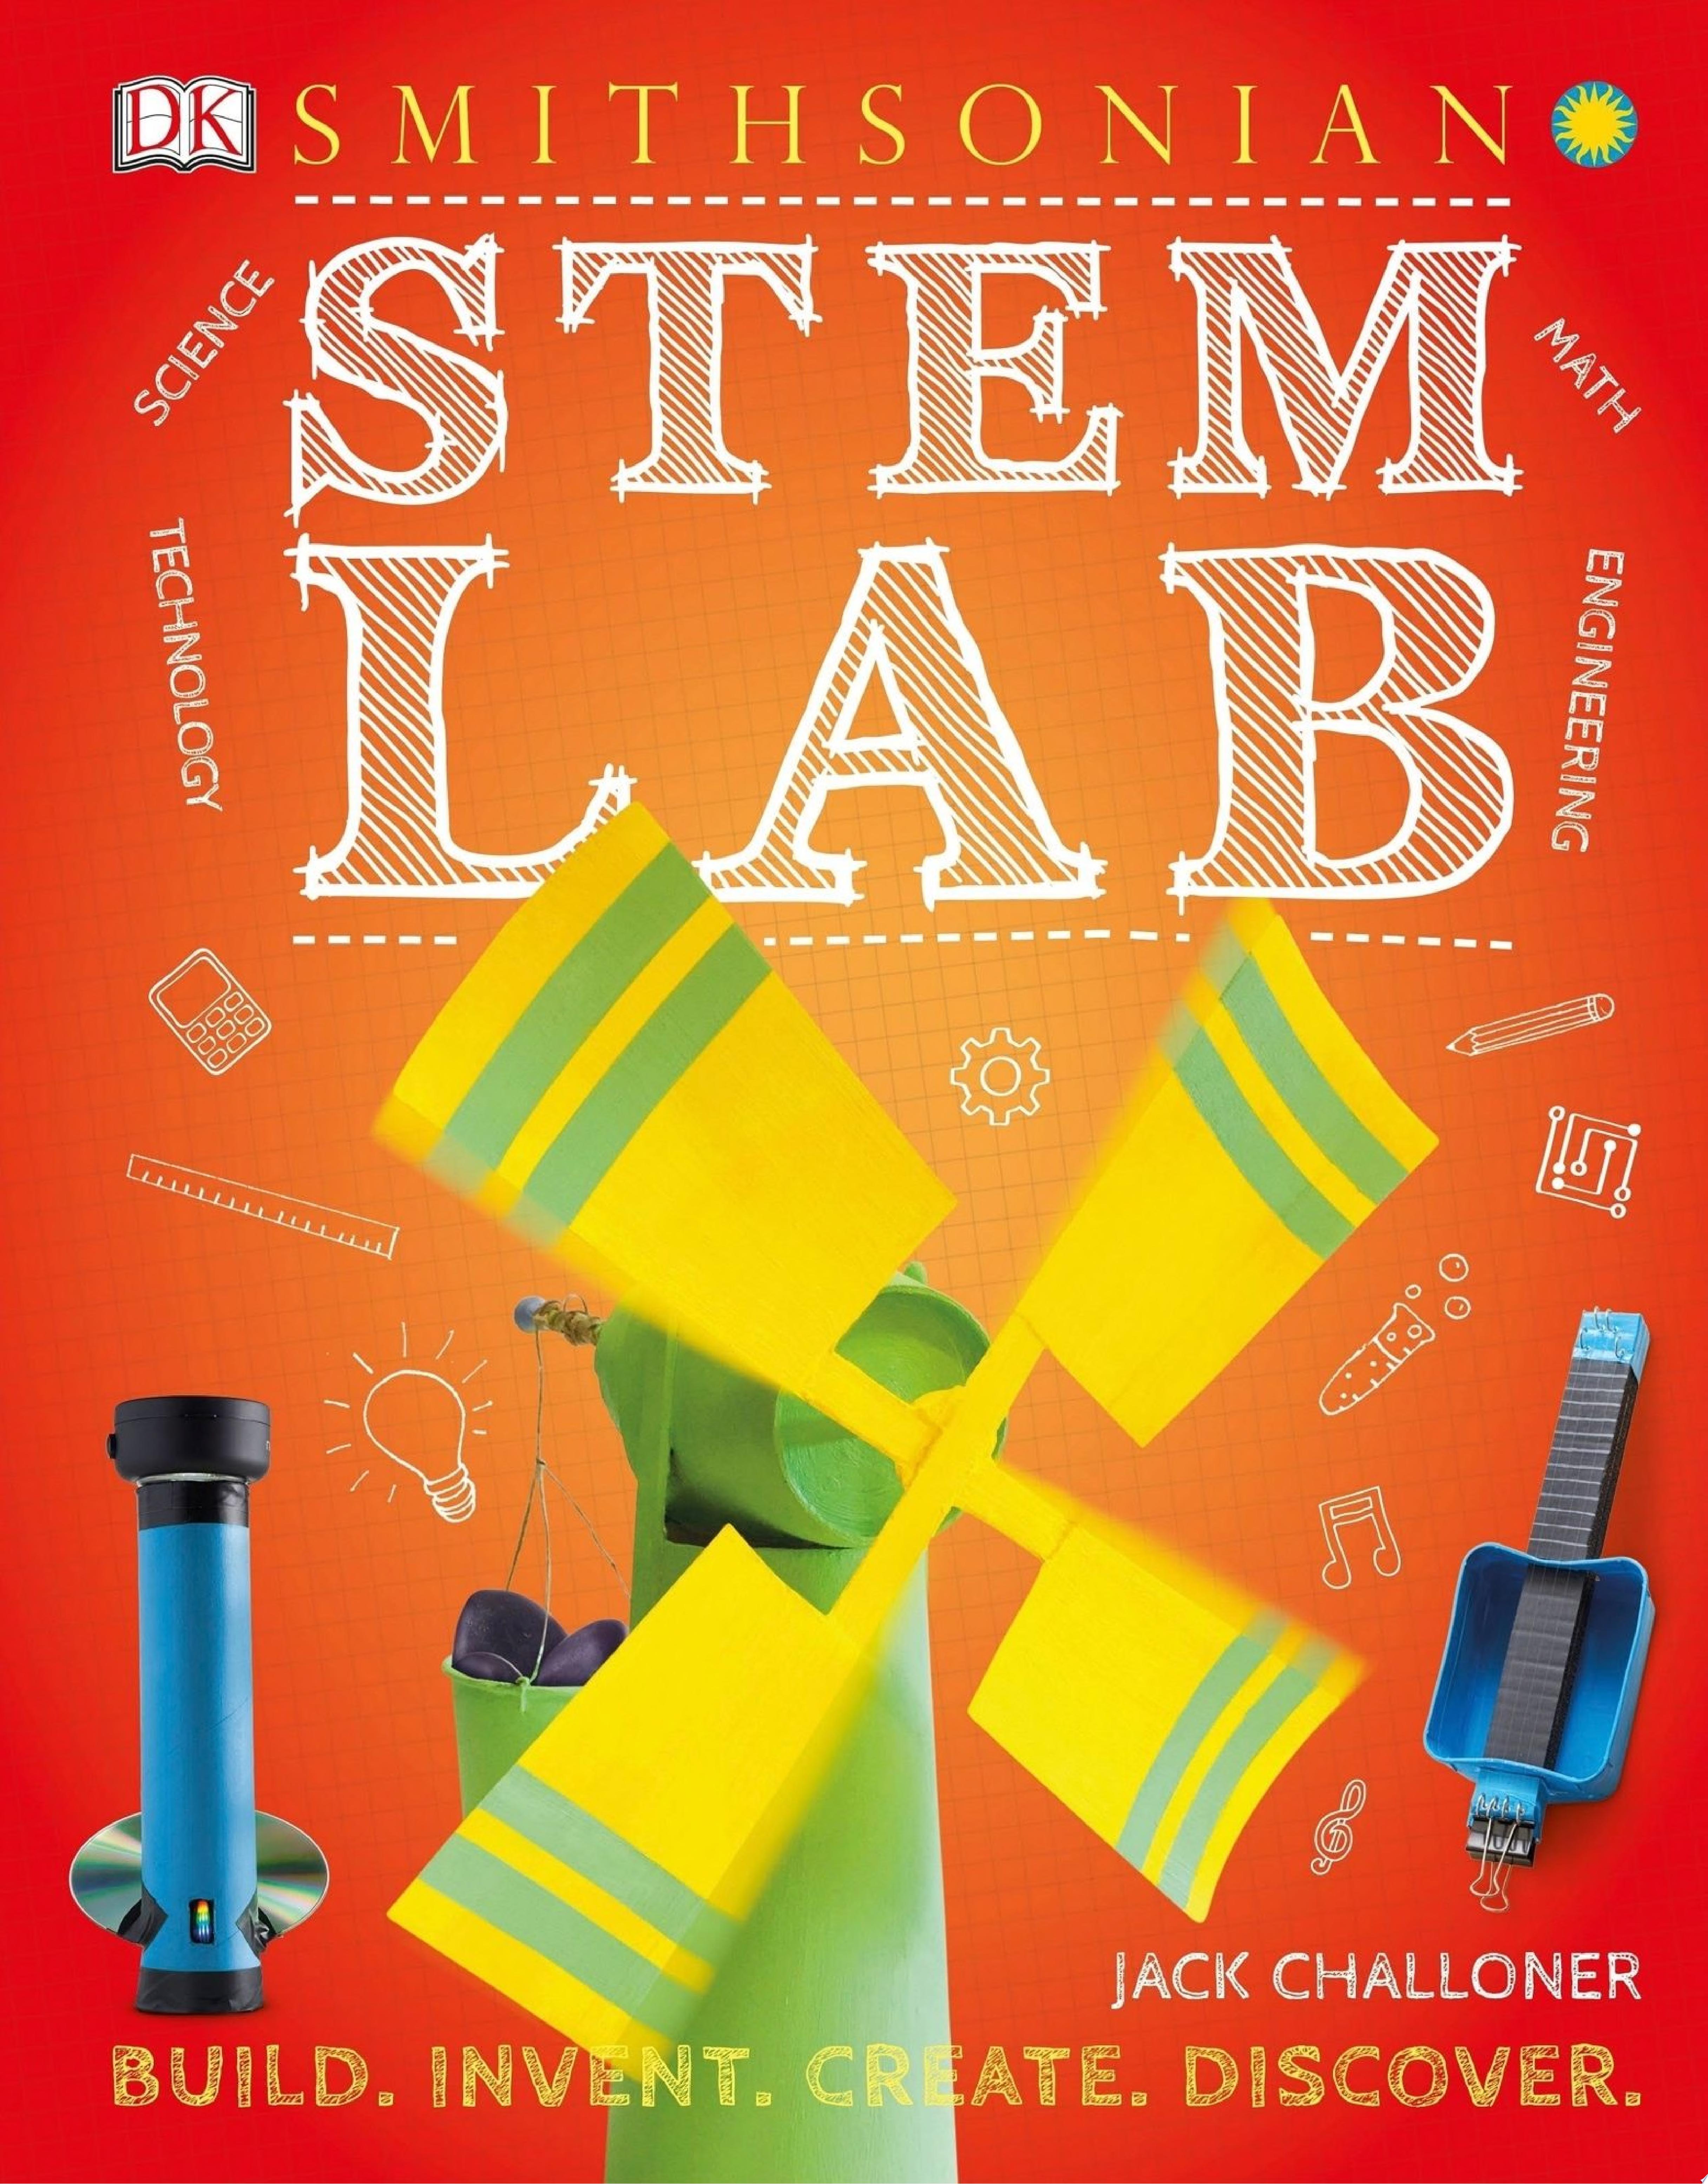 Image for "STEM Lab"